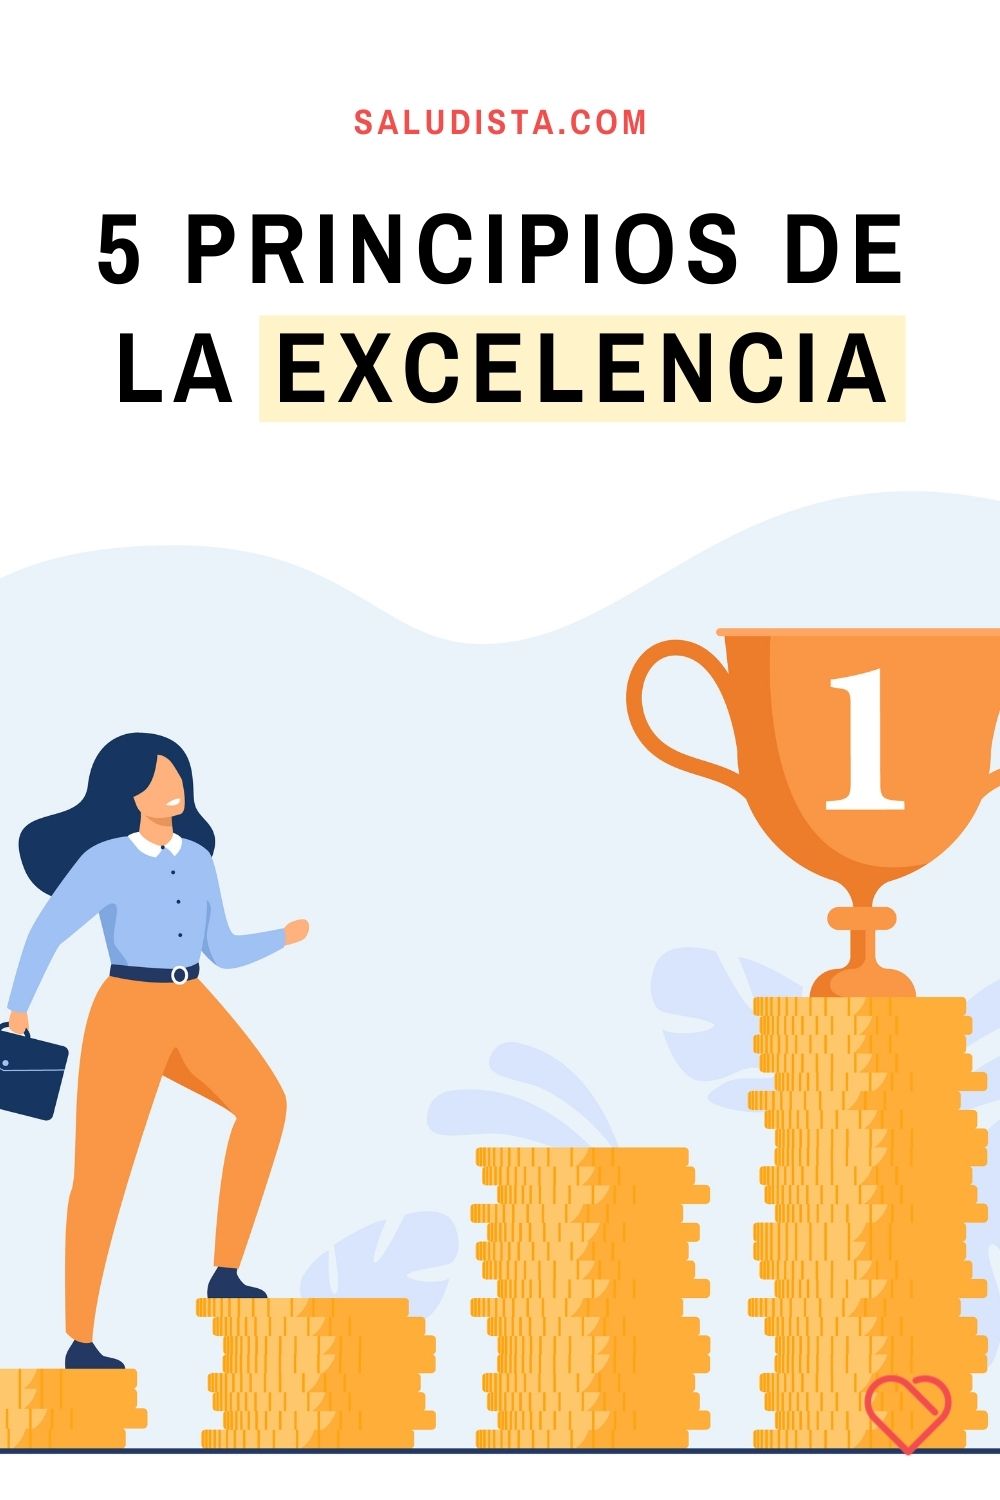 5 principios de la excelencia